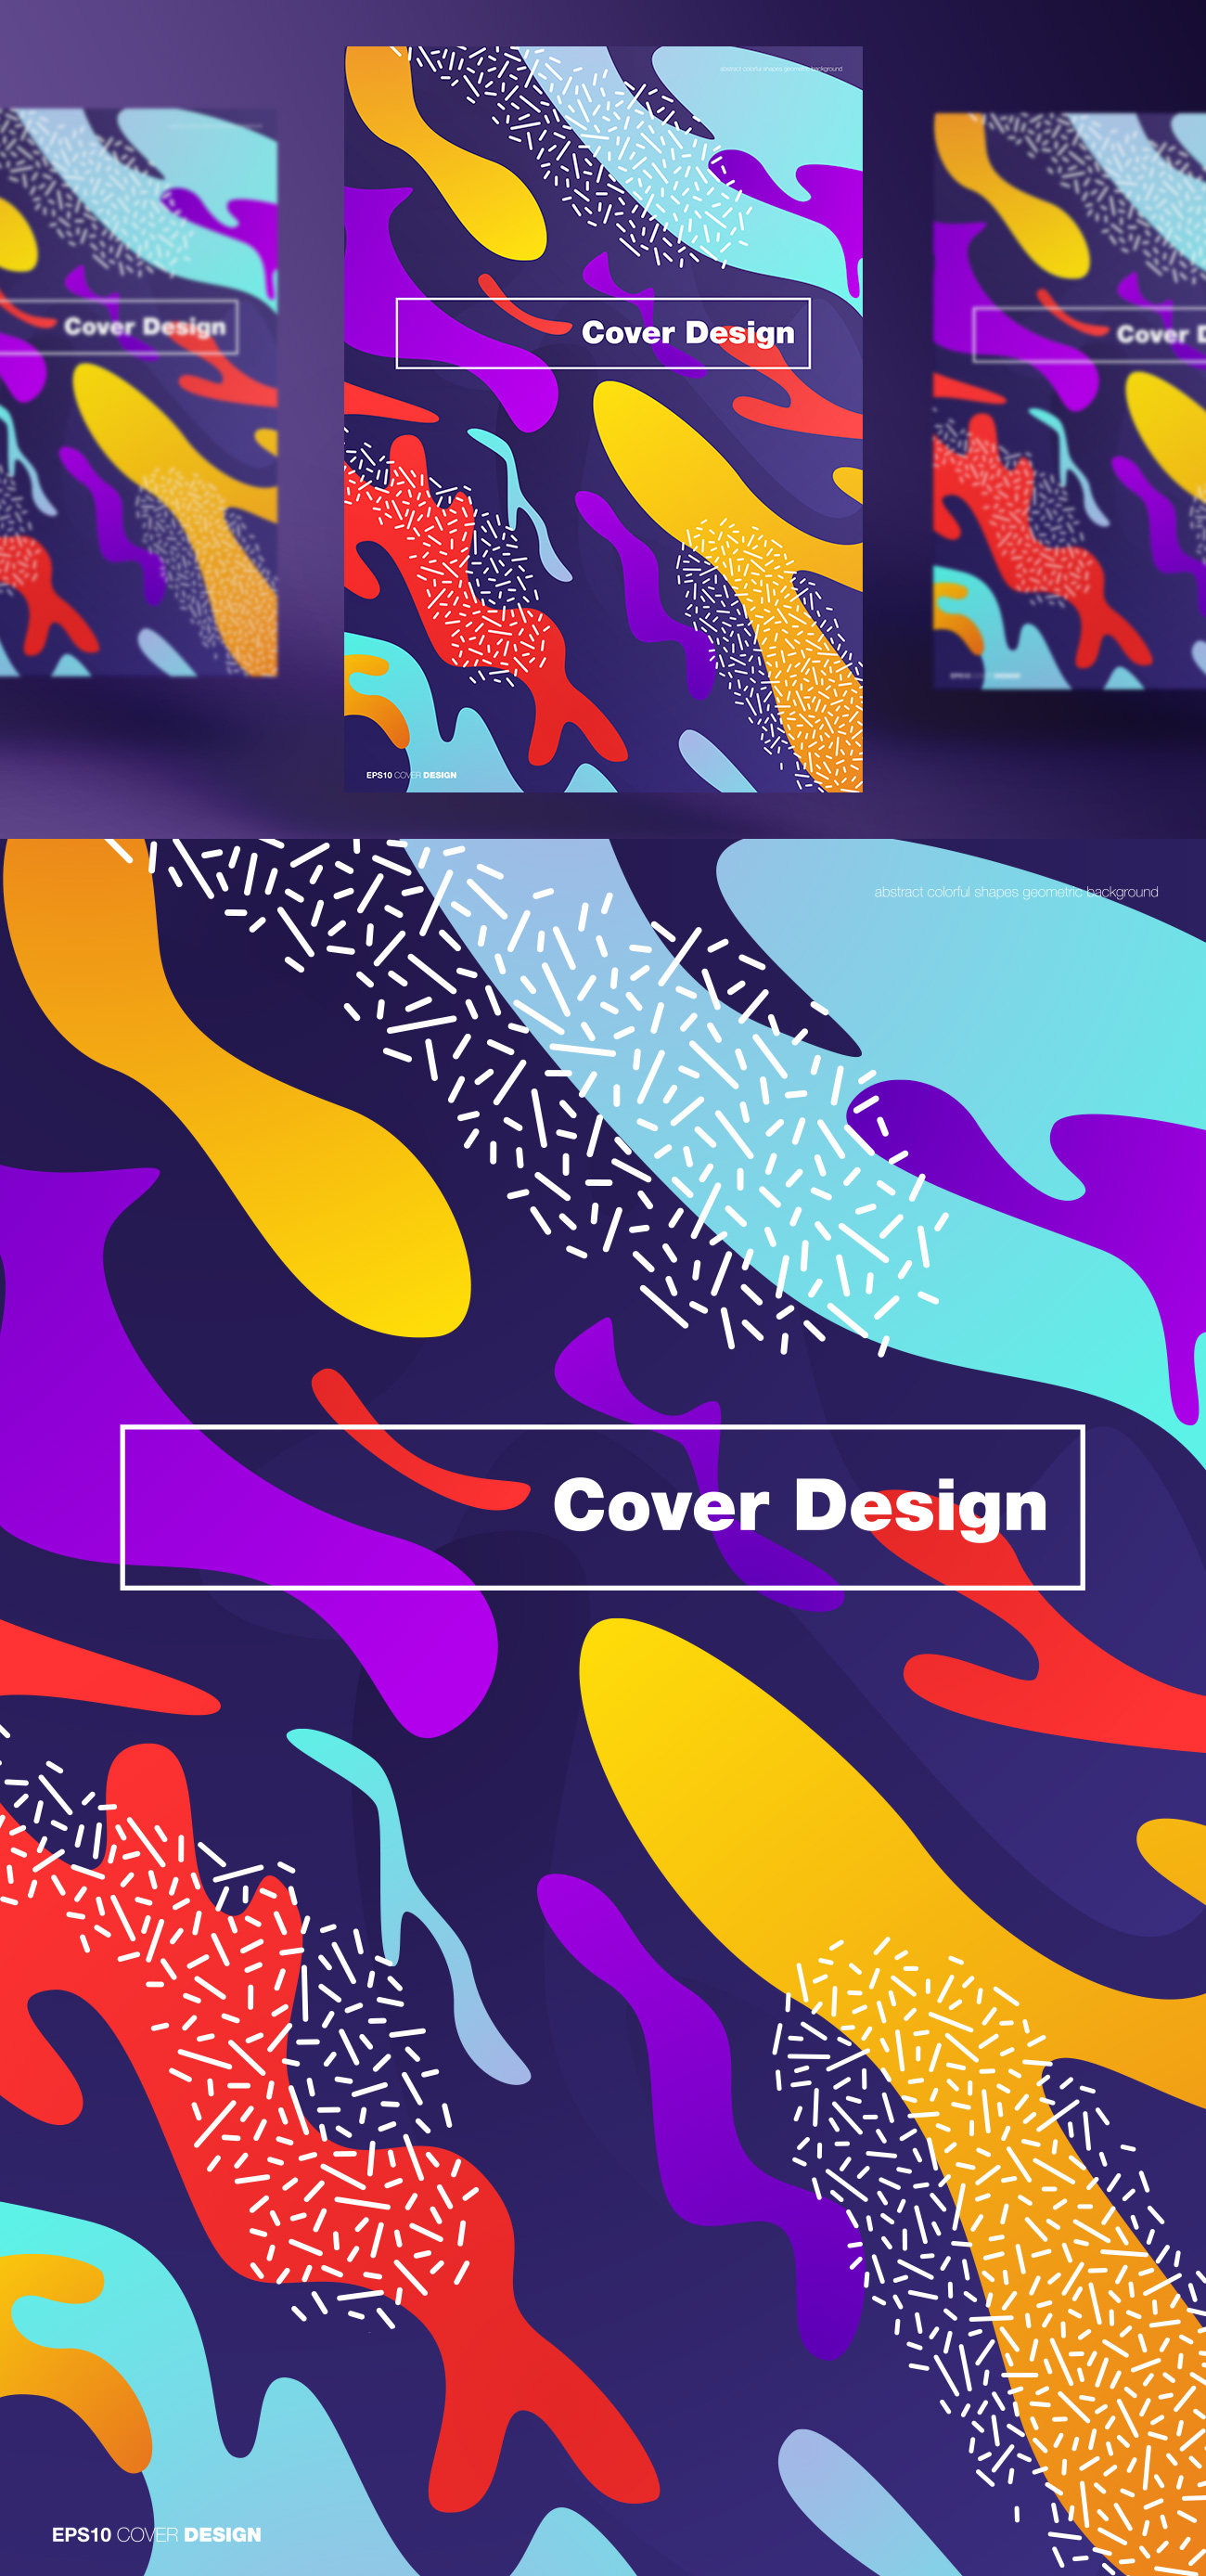 孟菲斯彩色流体渐变抽象形状封面设计矢量海报素材